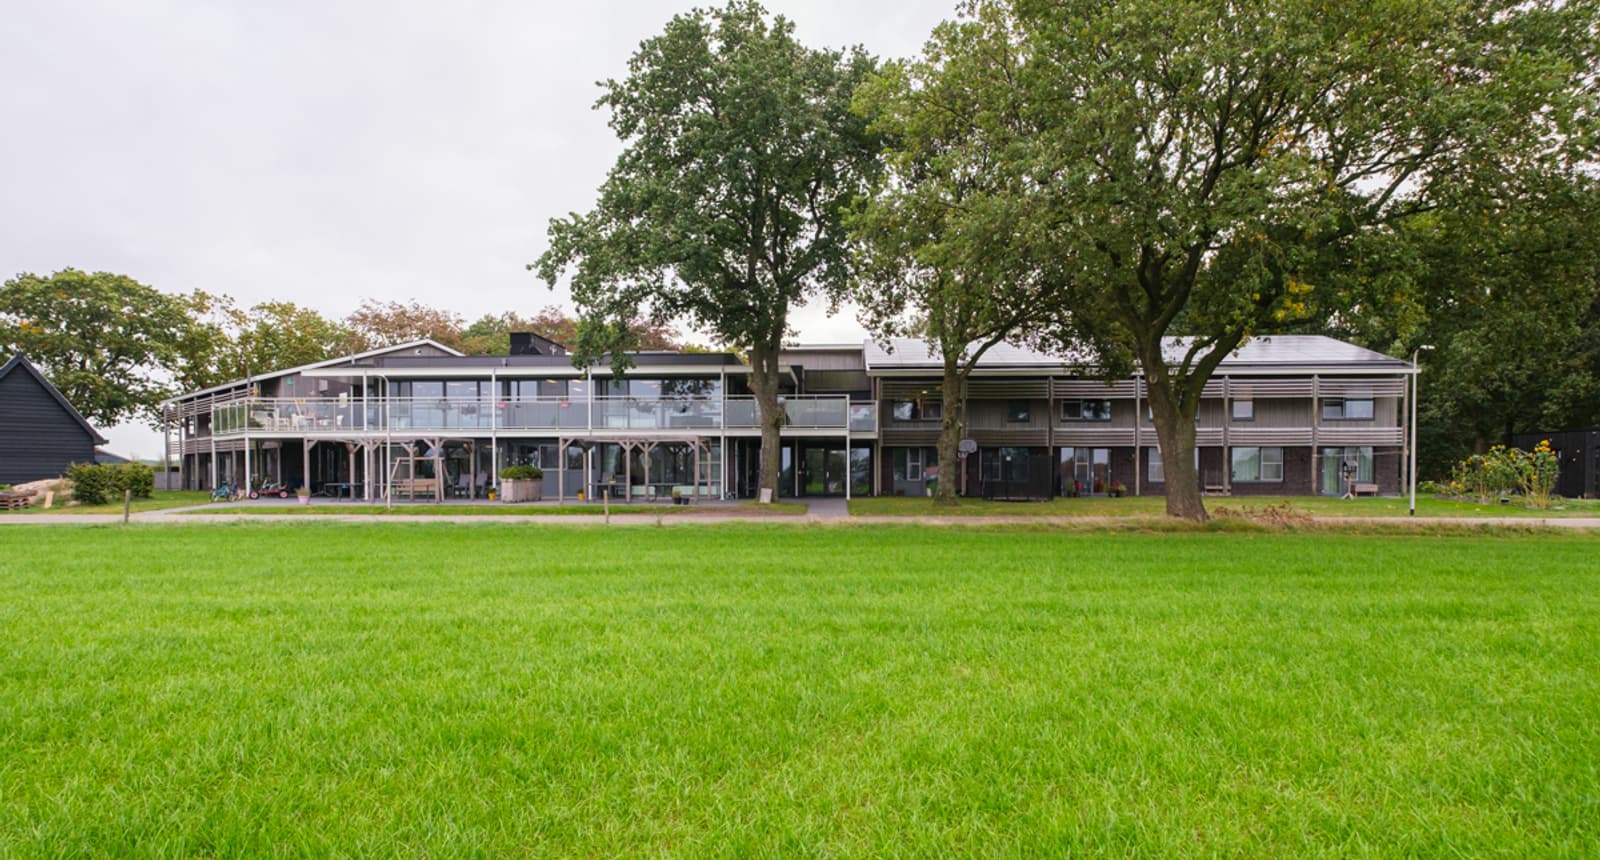 Woonzorglocatie Hoogenweg - Dijkhuis Bouwbiologische aannemer